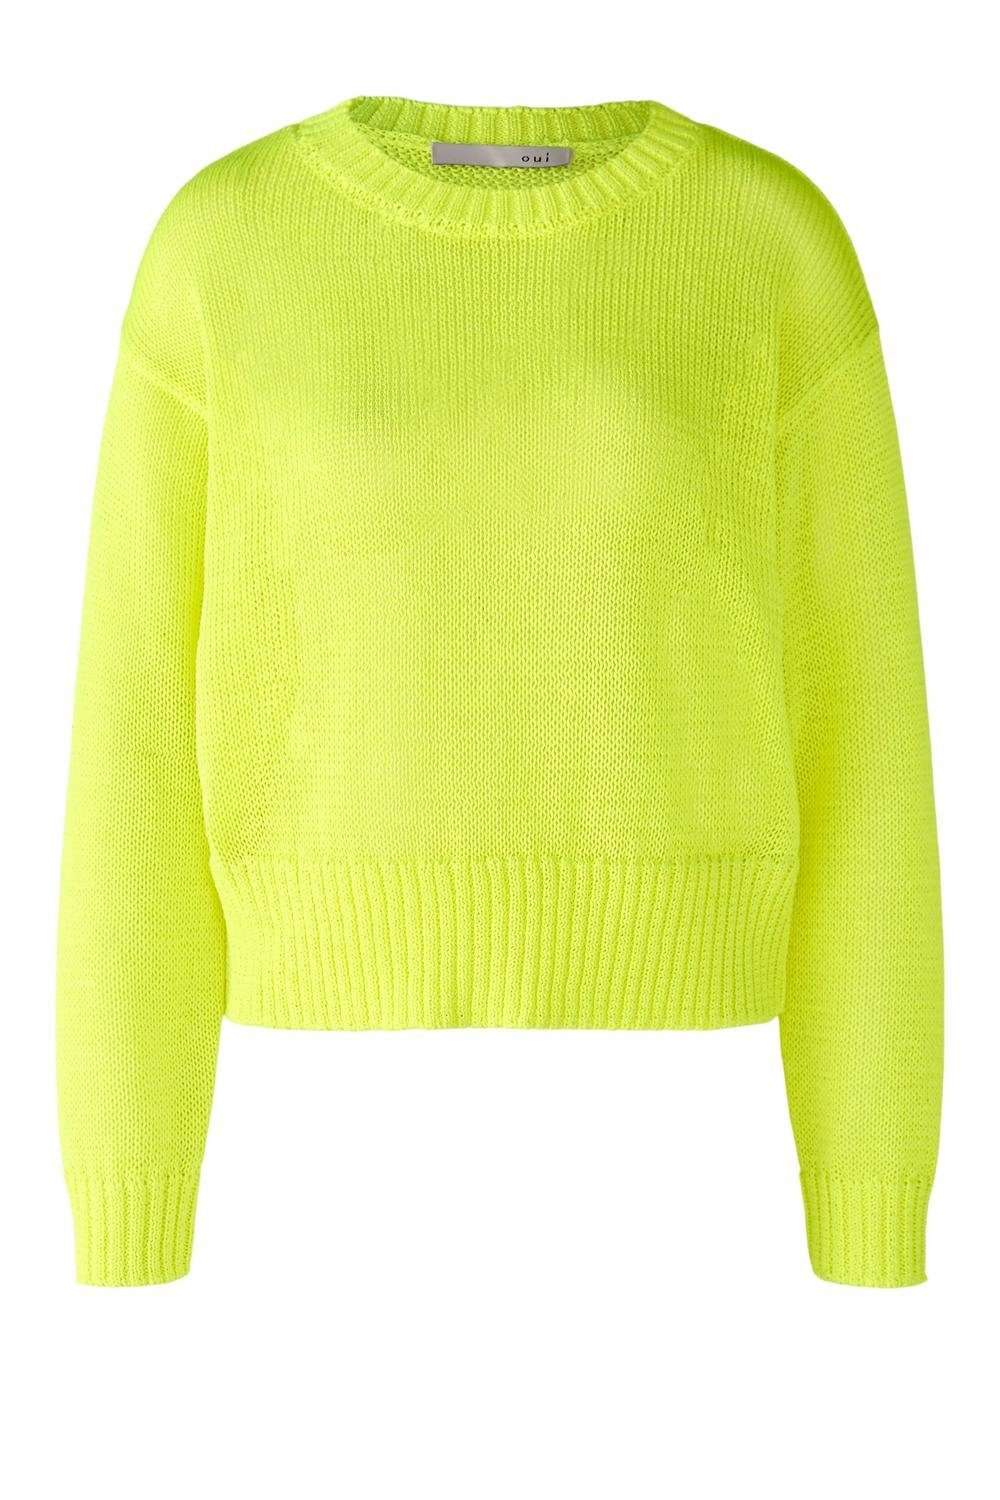 Вязаный пуловер-свитер укороченной длины